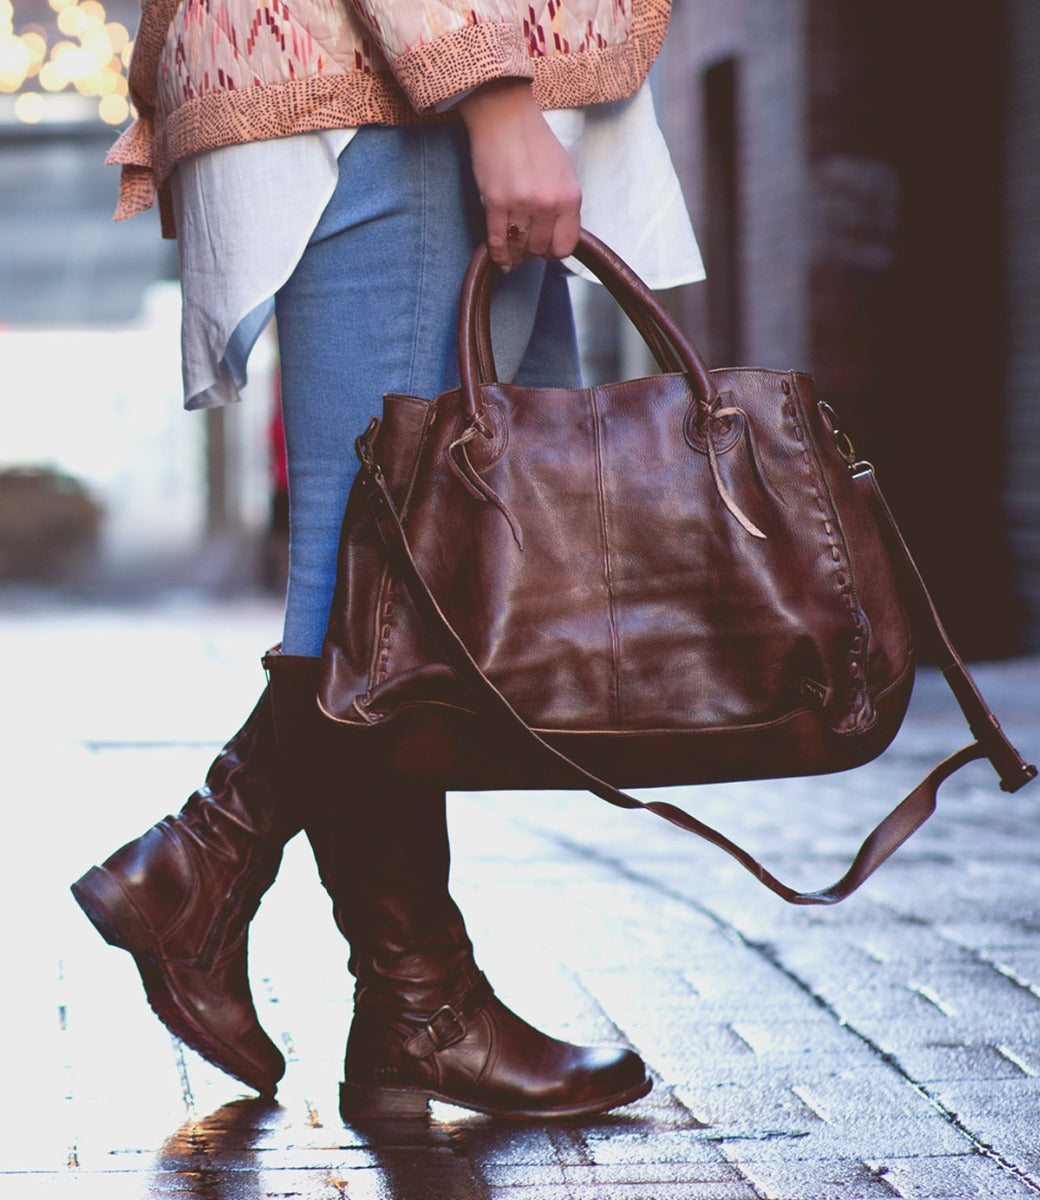 A woman carrying a Rockaway handbag by Bed Stu on a sidewalk.